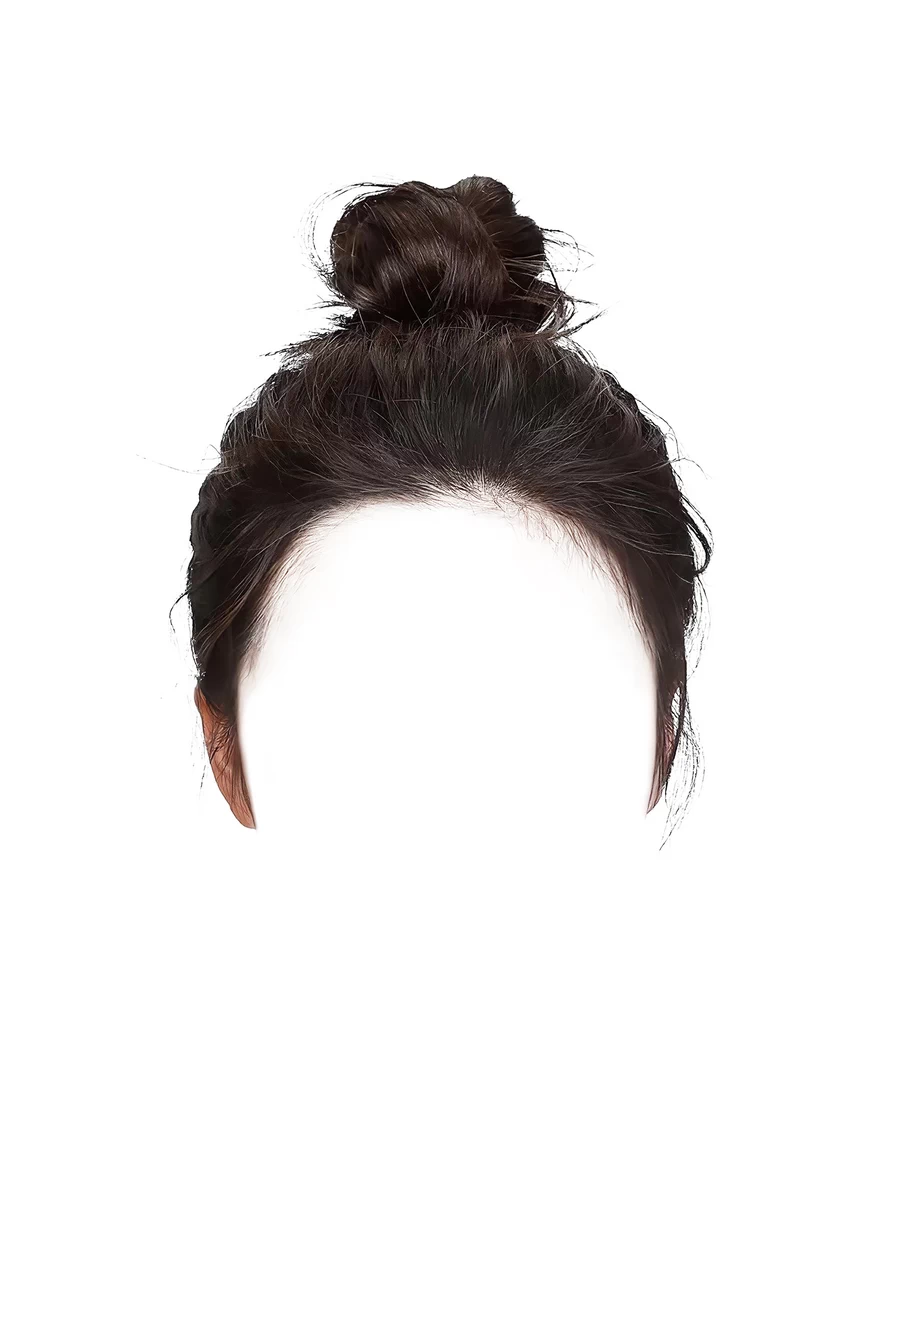 舞蹈生艺考证件照女士女生盘发丸子头发型后期合成PSD设计素材【045】